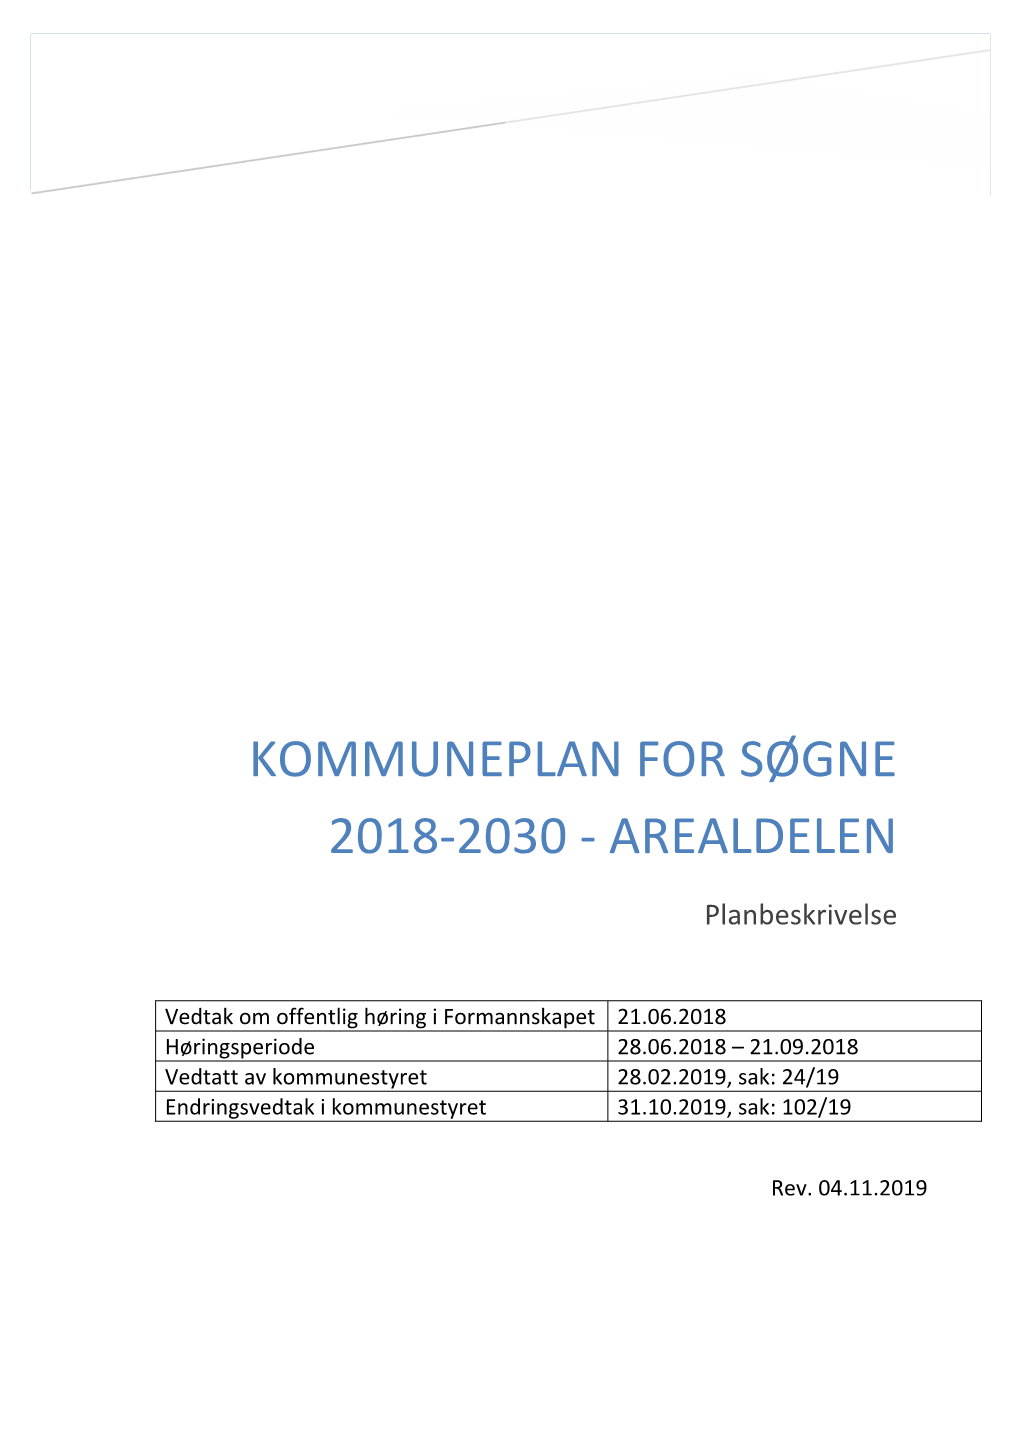 Kommuneplan for Søgne 2018-2030 - Arealdelen